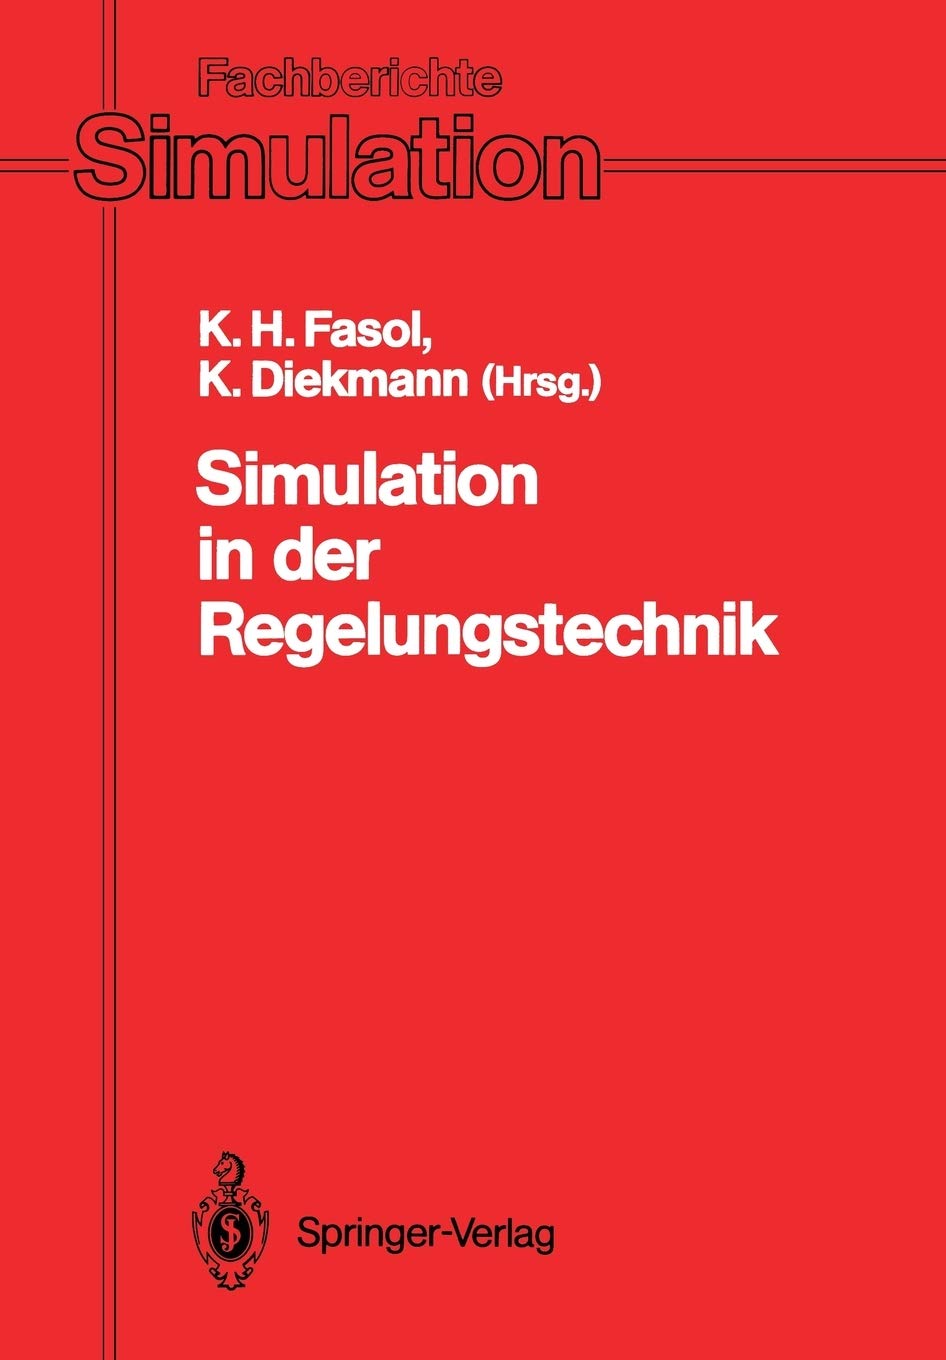 Simulation in der Regelungstechnik (Fachberichte Simulation, 12) (German Edition)